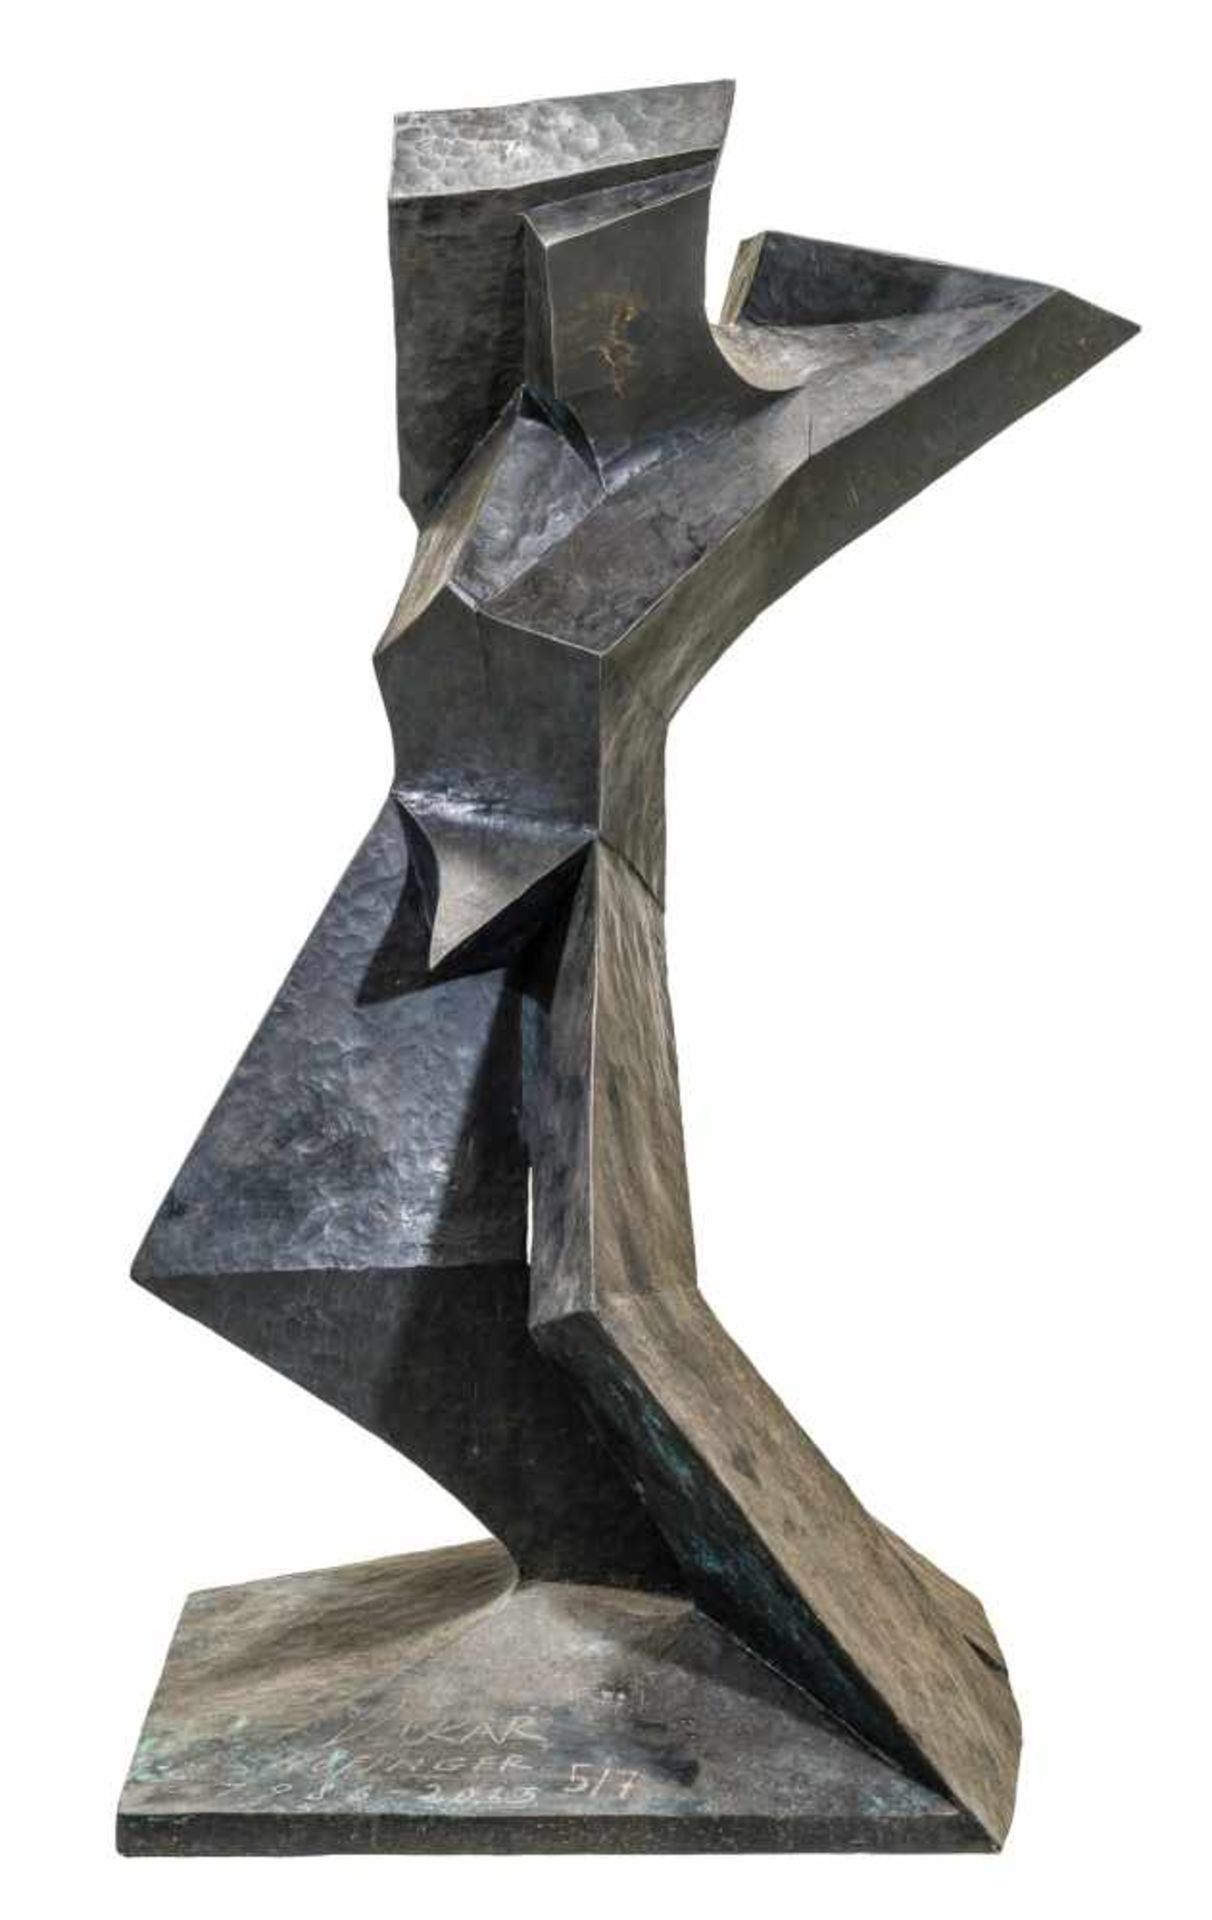 Oskar E. Höfinger * Golling / Erlauf 1935 geb. Erhebung Bronze, patiniert 105 x 56 x 37 cm